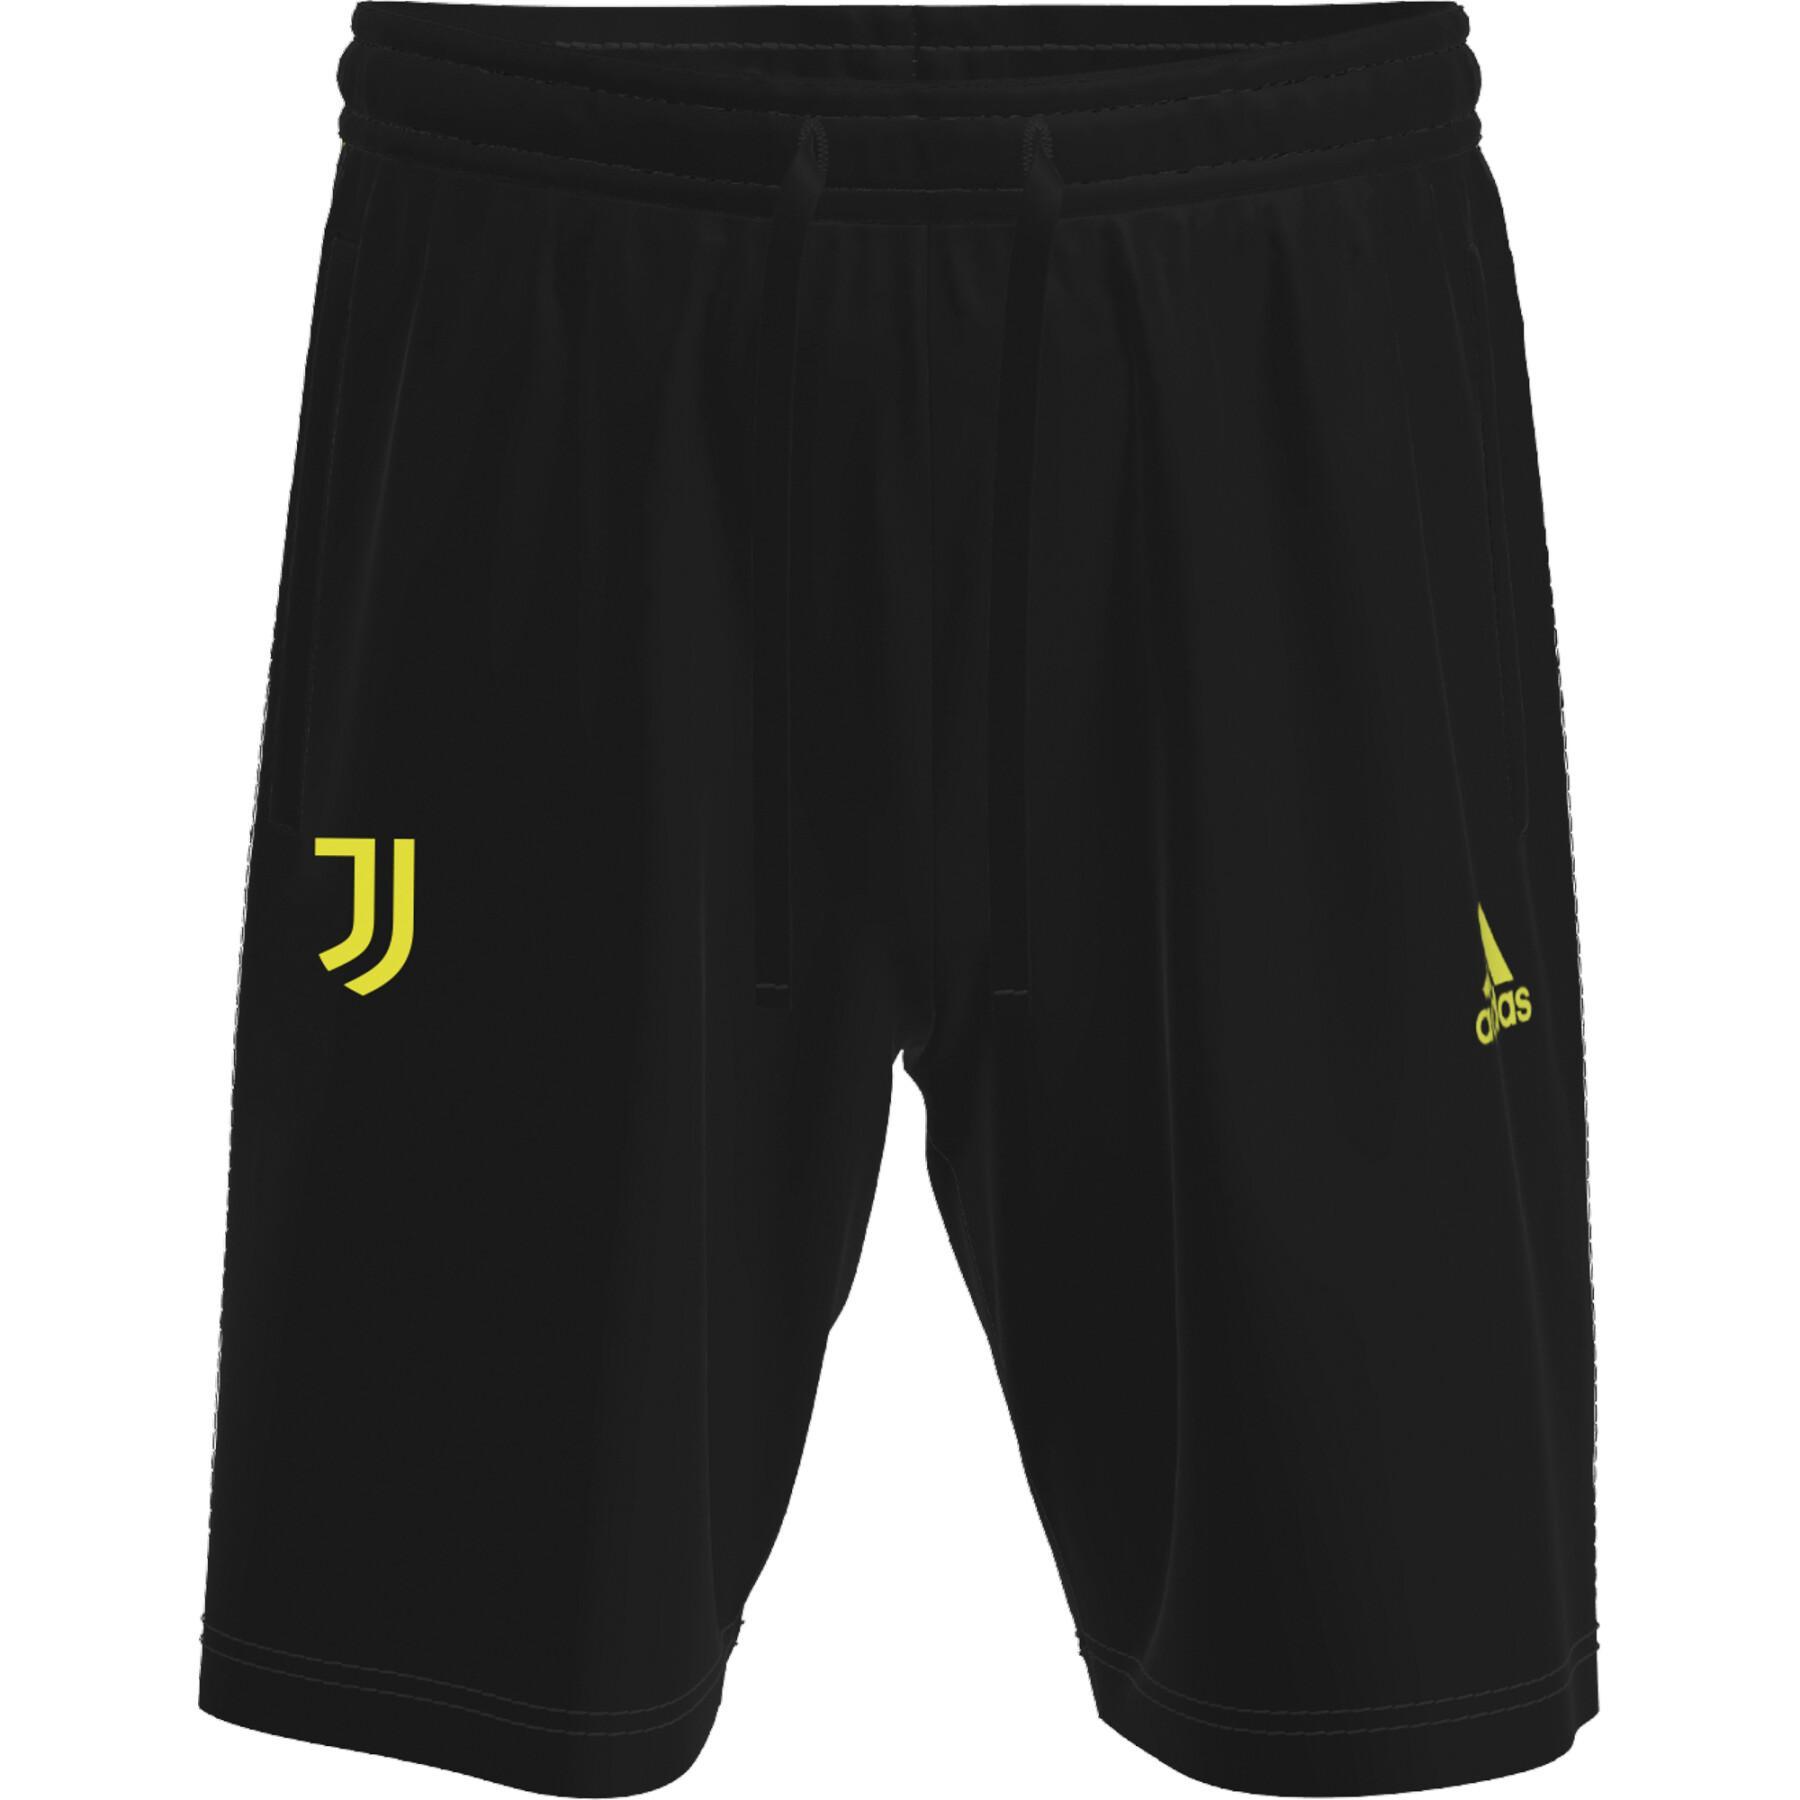 Short Juventus Travel